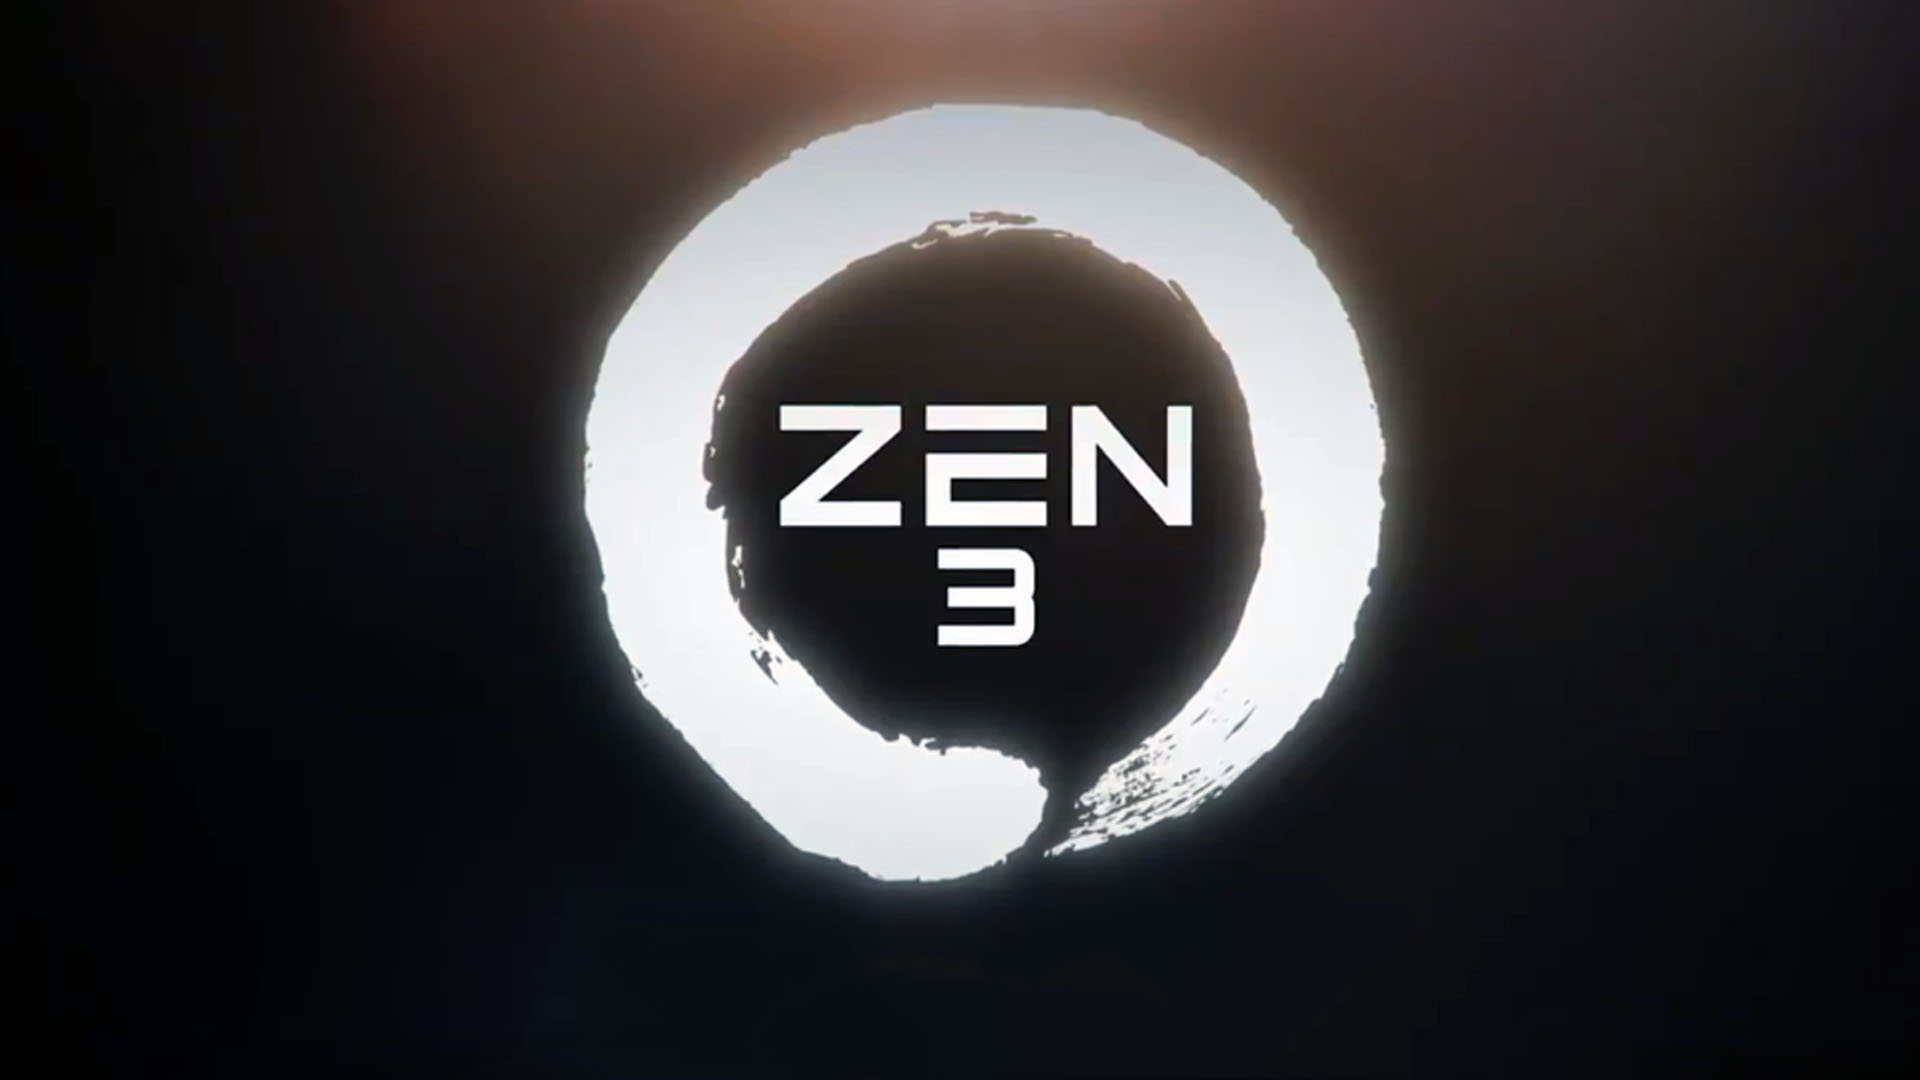 Zen 3 Mimarili AMD Ryzen 5000 Serisi Üstünlüğü Ele Geçirdi Ama Son Çiviyi Çakabildi Mi? Hedef Zen 4